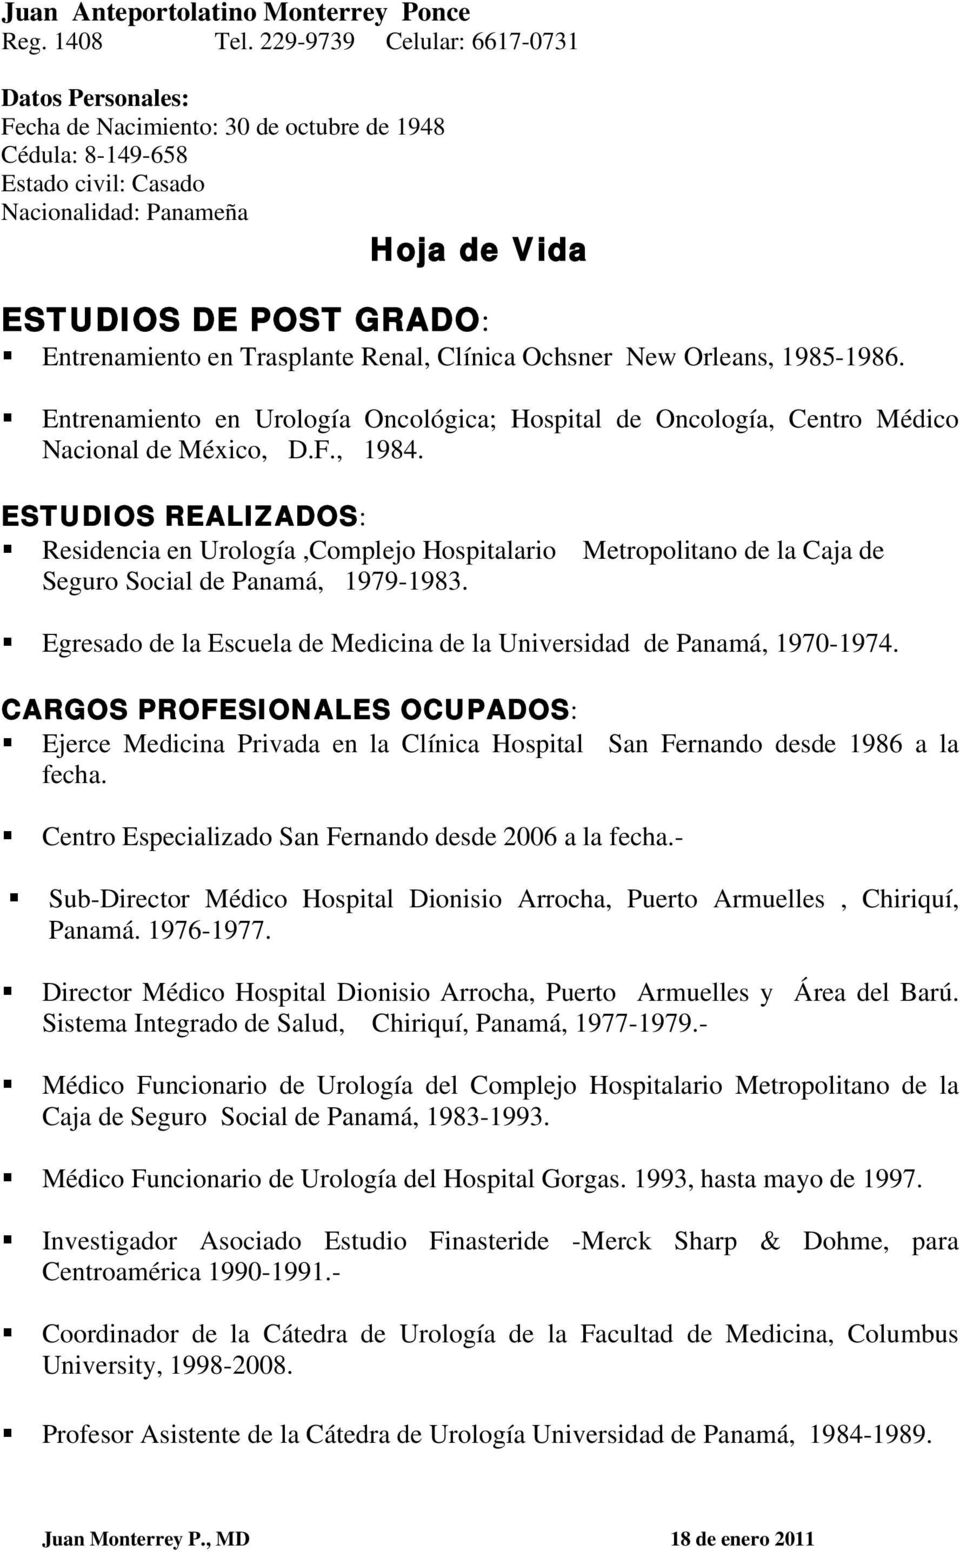 Entrenamiento en Trasplante Renal, Clínica Ochsner New Orleans, 1985-1986. Entrenamiento en Urología Oncológica; Hospital de Oncología, Centro Médico Nacional de México, D.F., 1984.